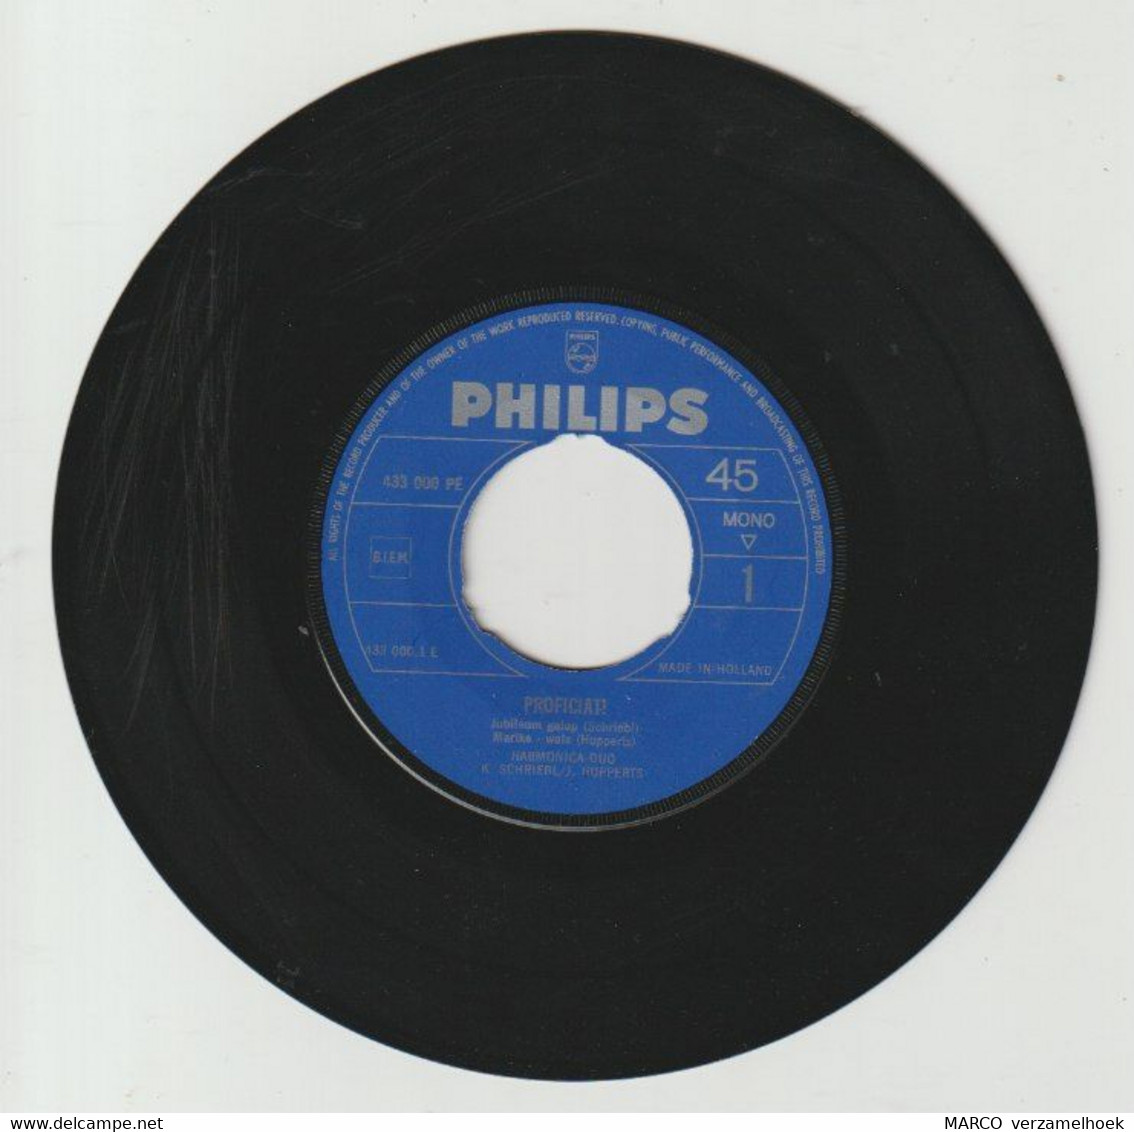 45T Single Harmonica-duo - Proficiat 1960 PHILIPS 433 000 - Sonstige - Niederländische Musik